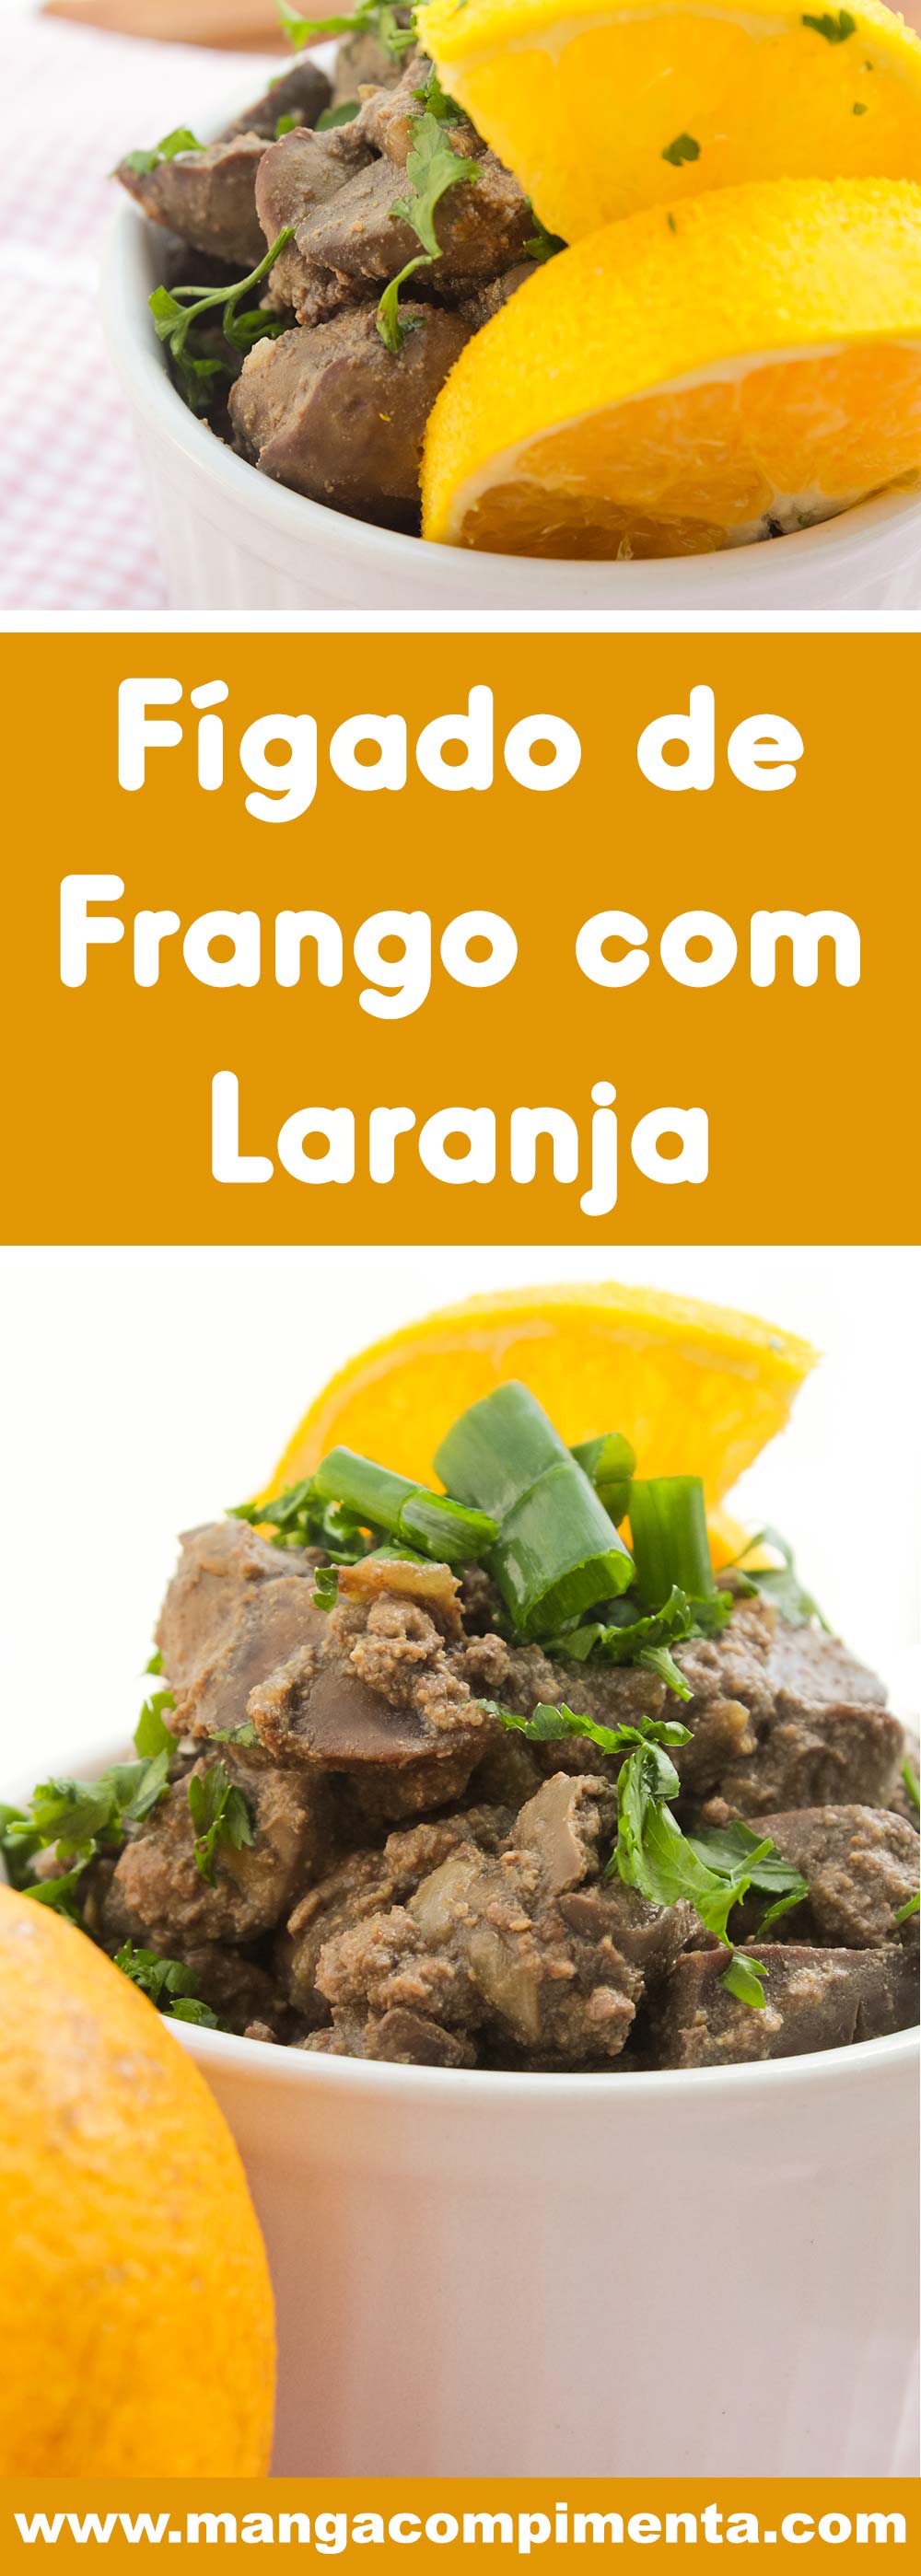 Fígado de Frango com Laranja - para um almoço nutritivo e delicioso.